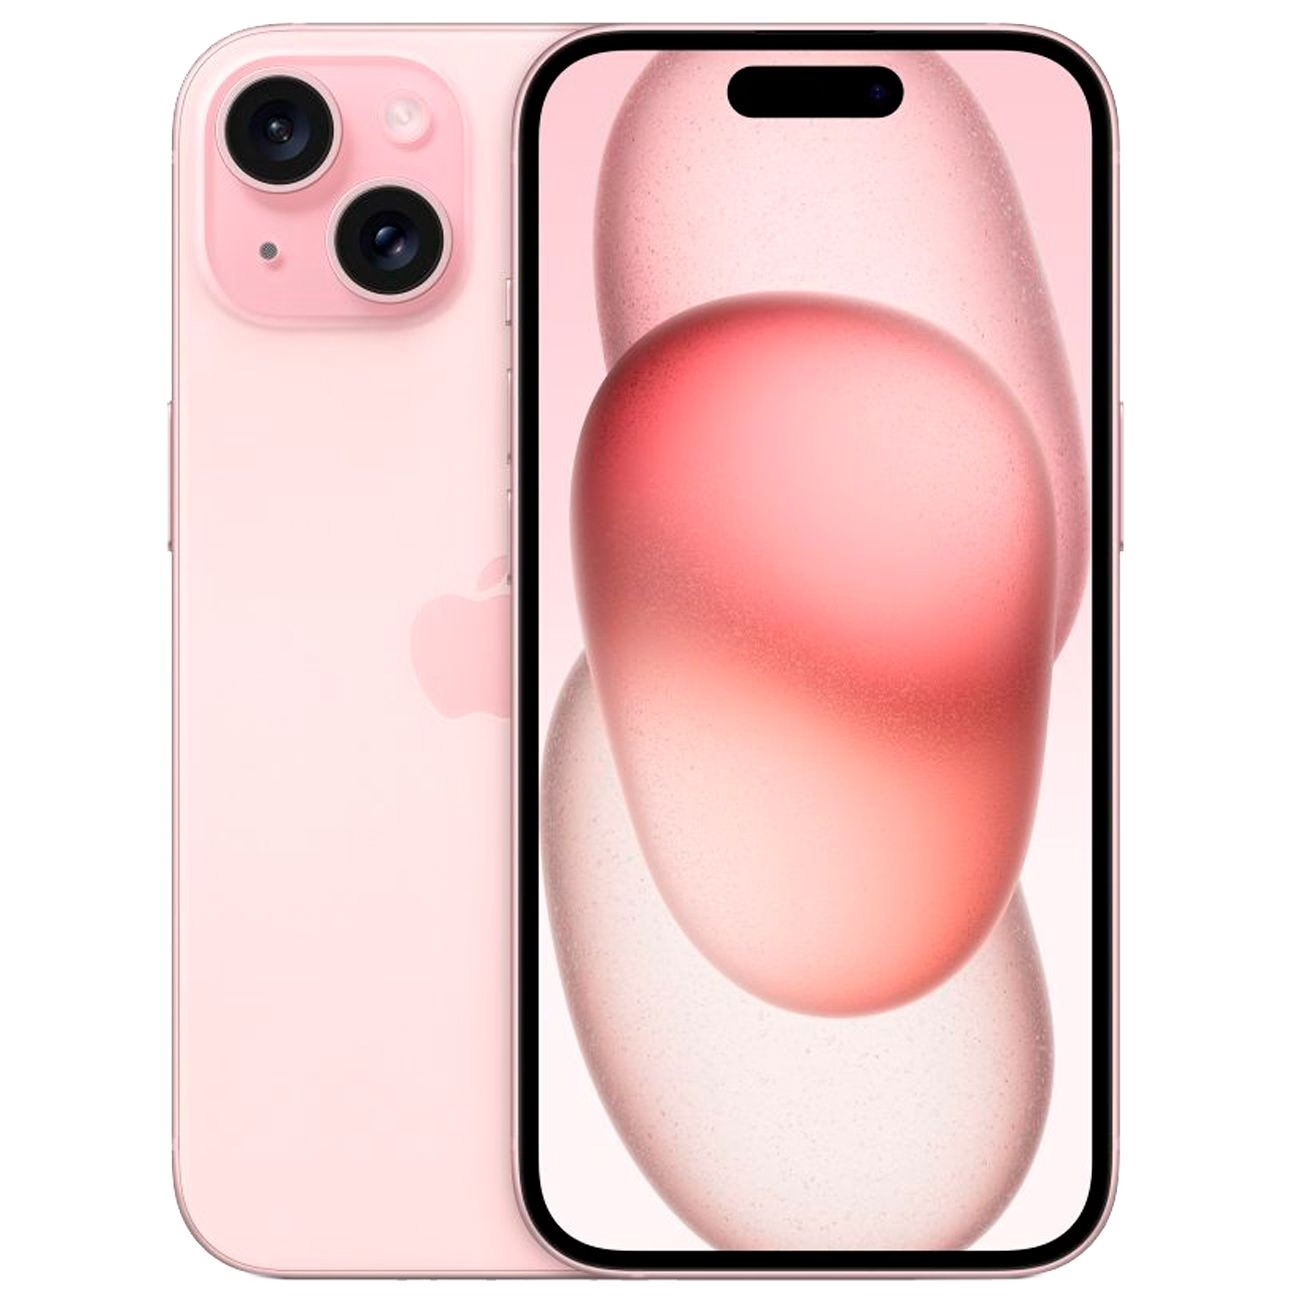 Купить смартфон apple iphone 15 512gb pink Apple iPhone 15 в официальном магазине Apple, Samsung, Xiaomi. iPixel.ru Купить, заказ, кредит, рассрочка, отзывы,  характеристики, цена,  фотографии, в подарок.